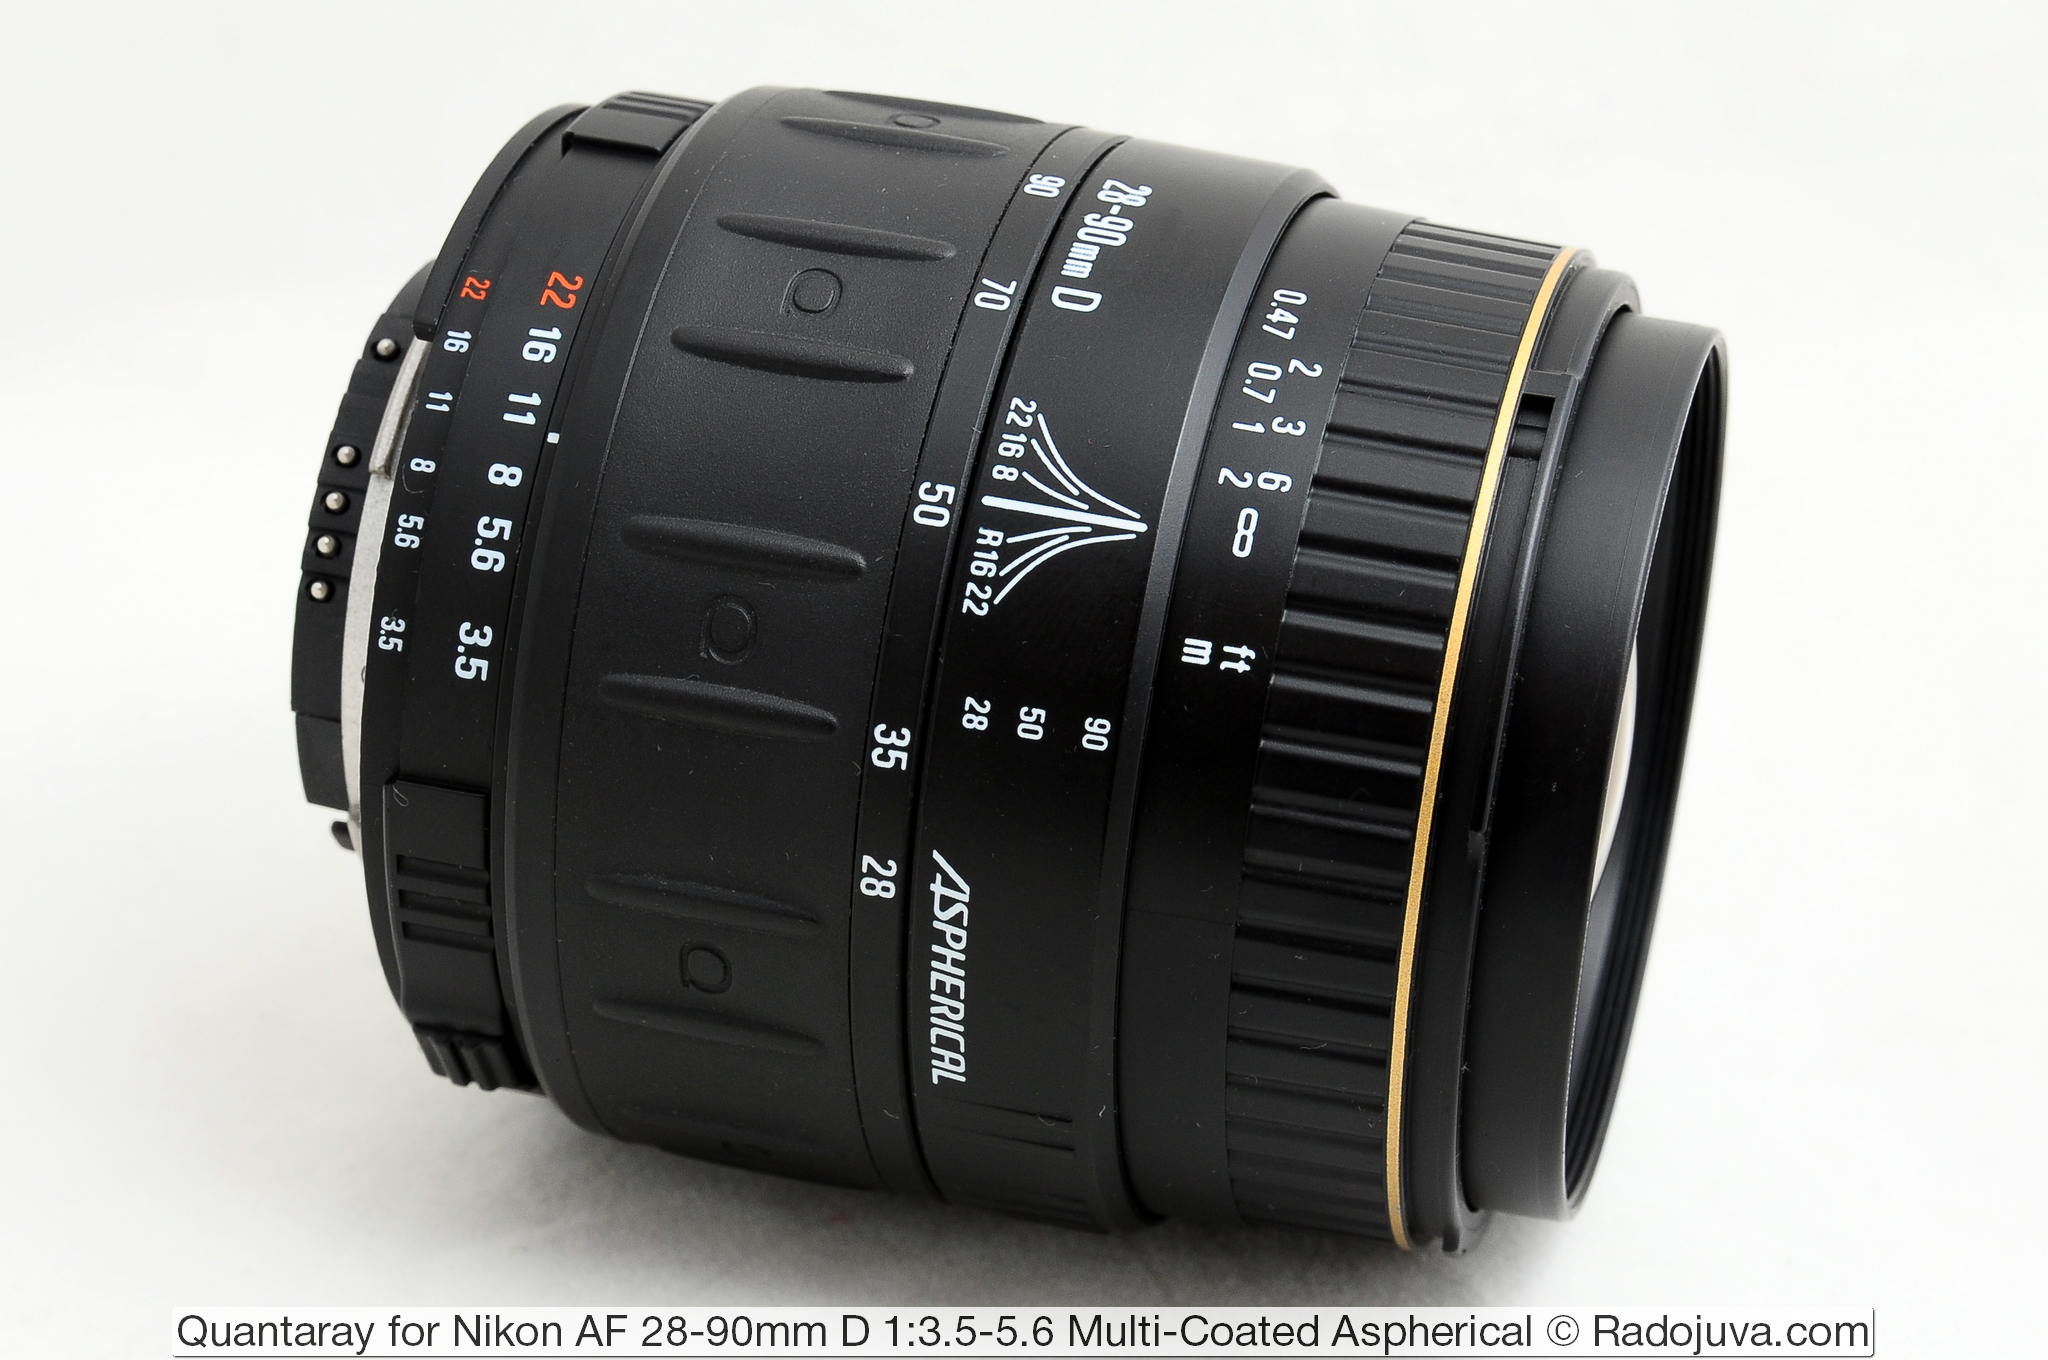 Quantaray for Nikon AF 28-90mm D 1:3.5-5.6 Multi-Coated Aspherical